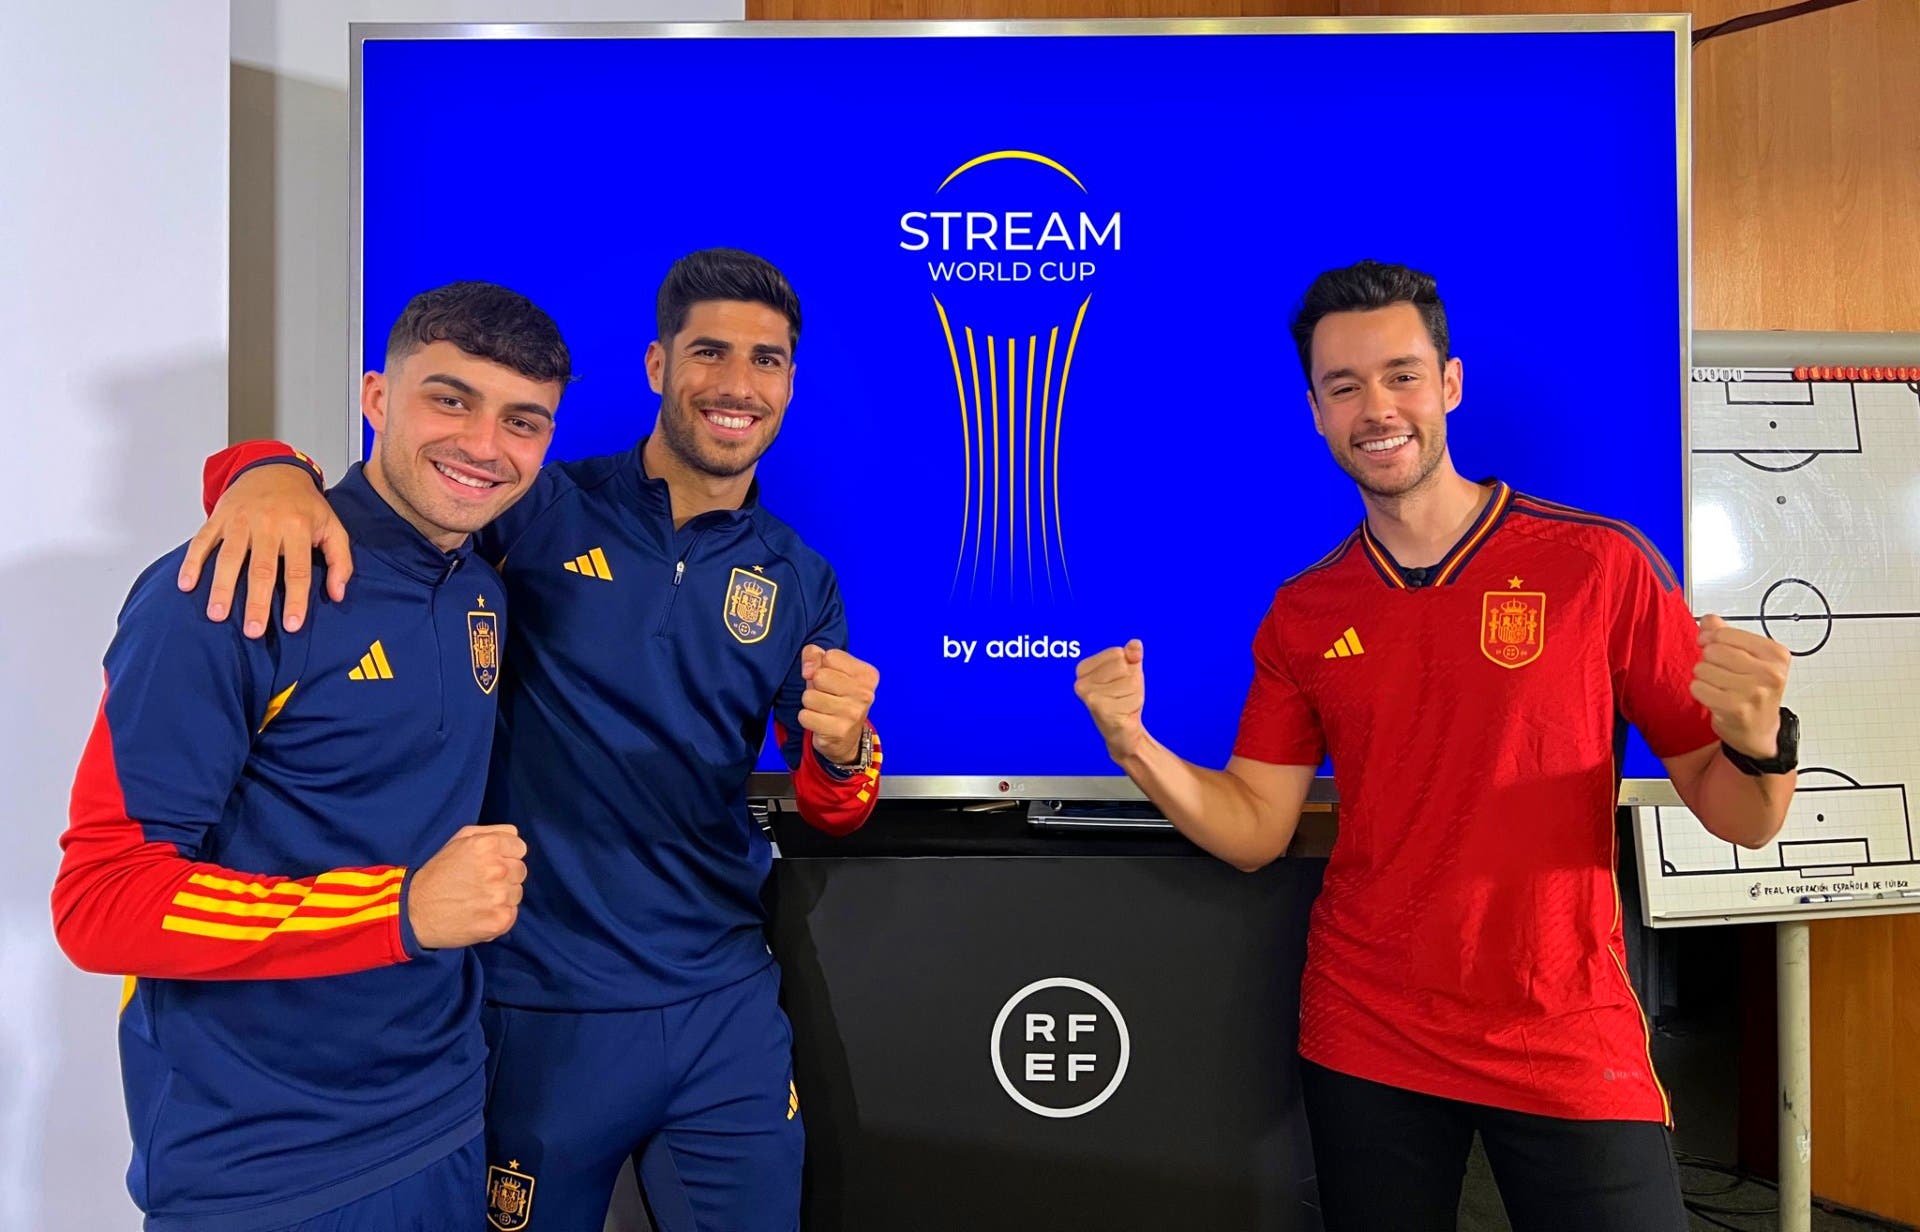 y Adidas se unen para Mundial de Fútbol de youtubers; nace la Stream World Cup